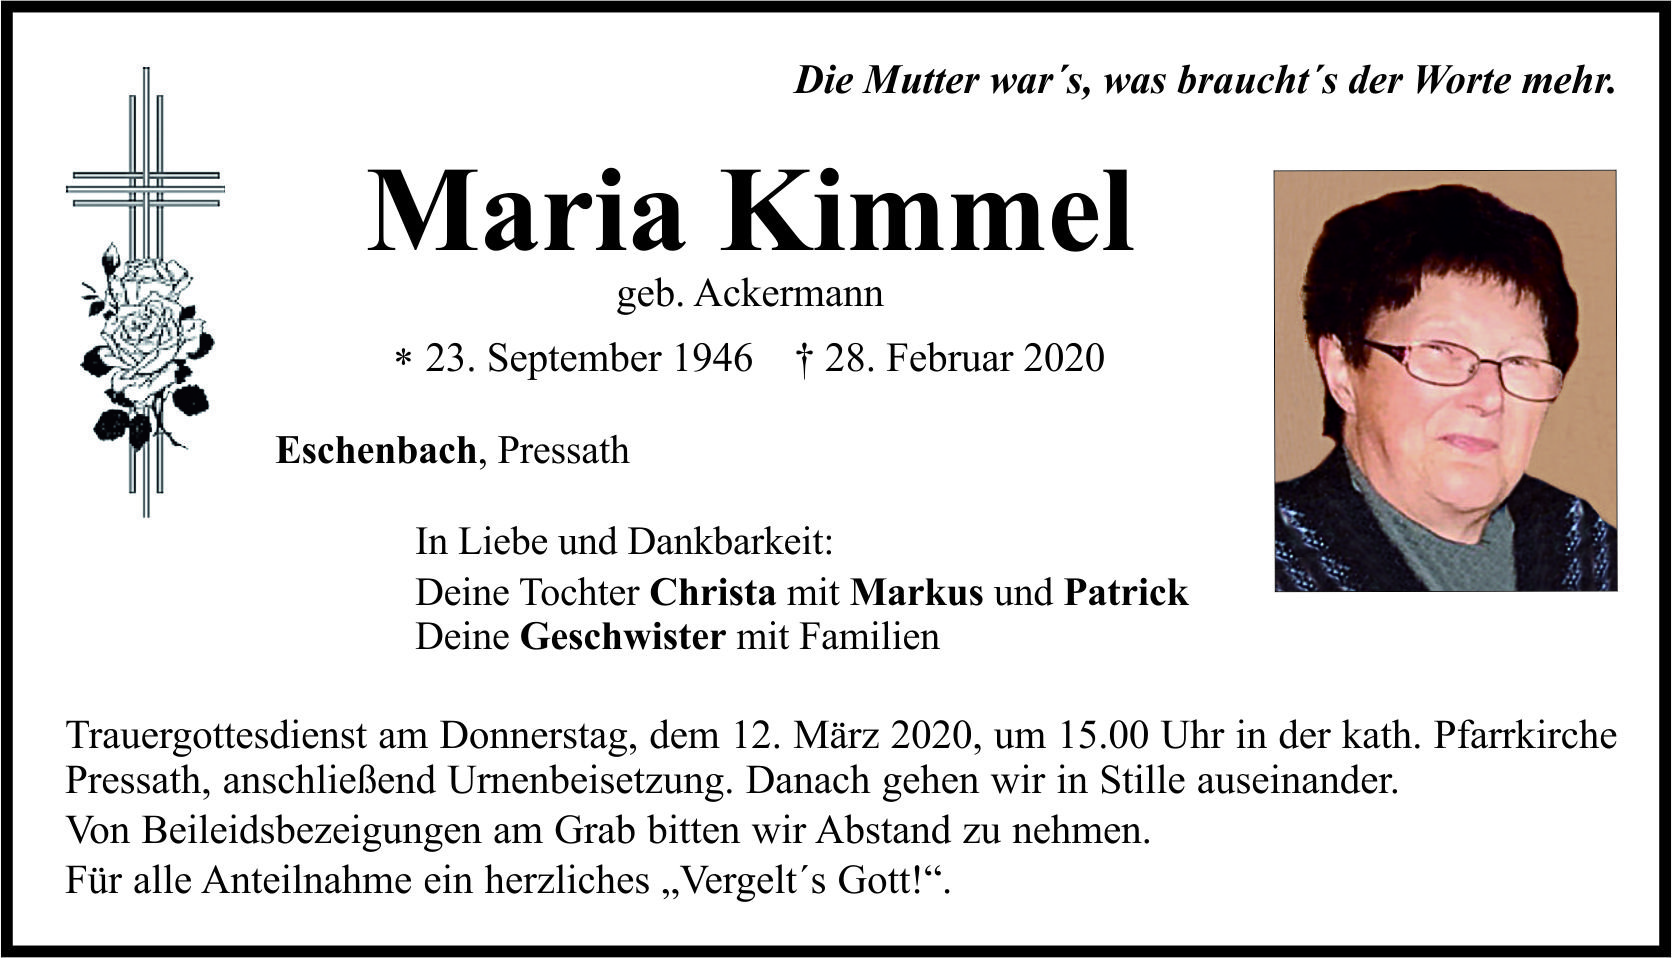 Traueranzeige Maria Kimmel, Eschenbach Pressath